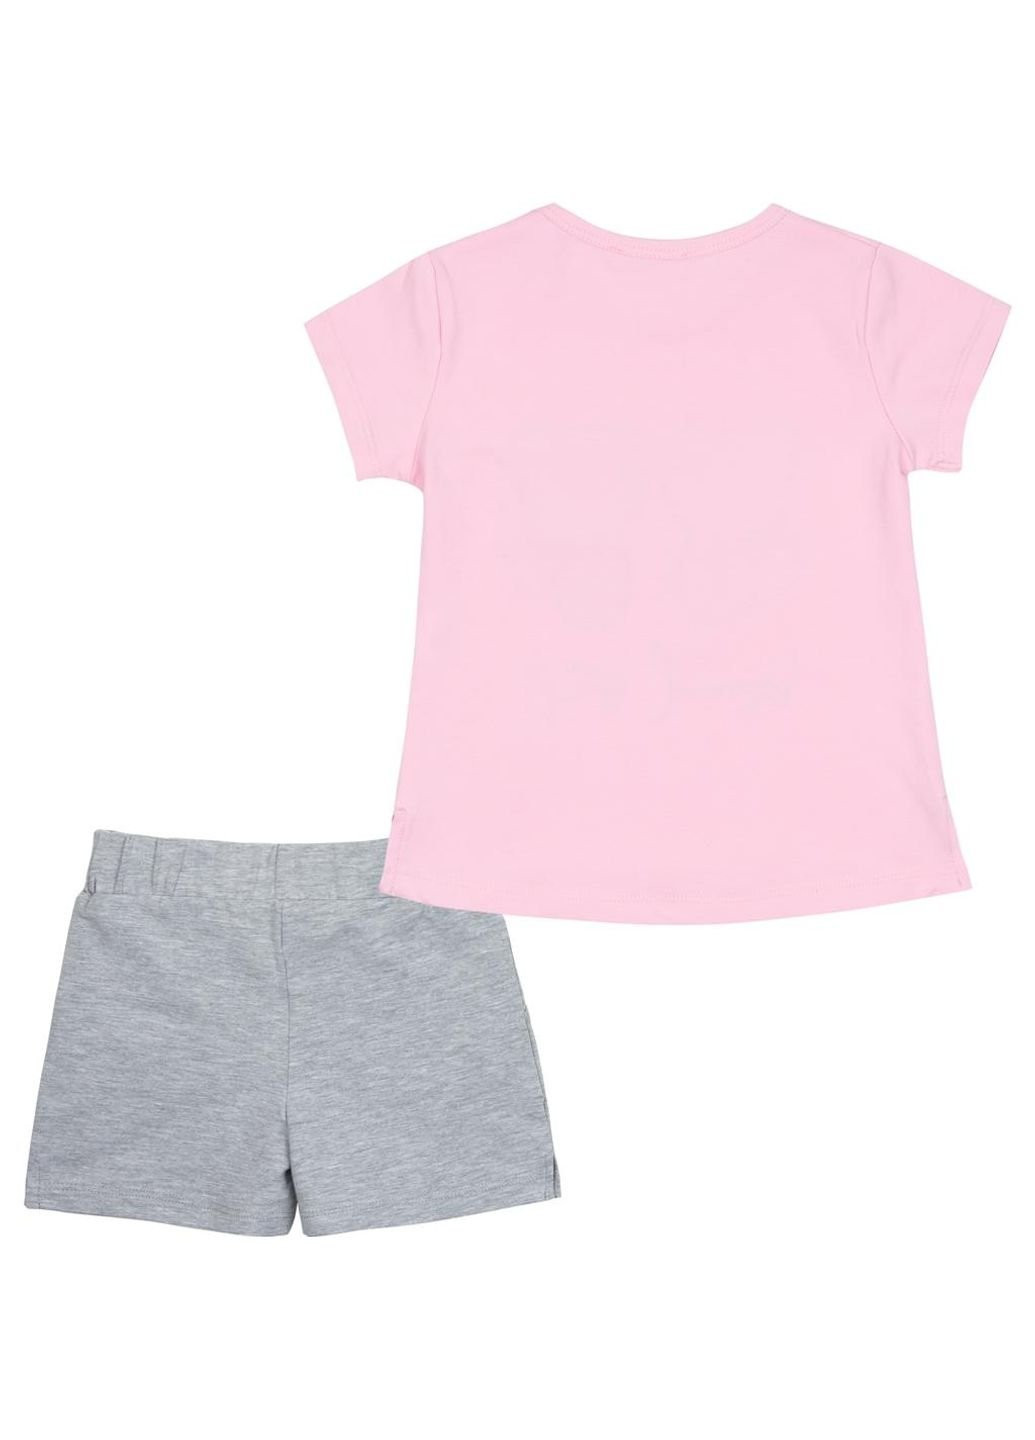 Светло-серый летний набор детской одежды с котятами (10843-110g-pink) Breeze